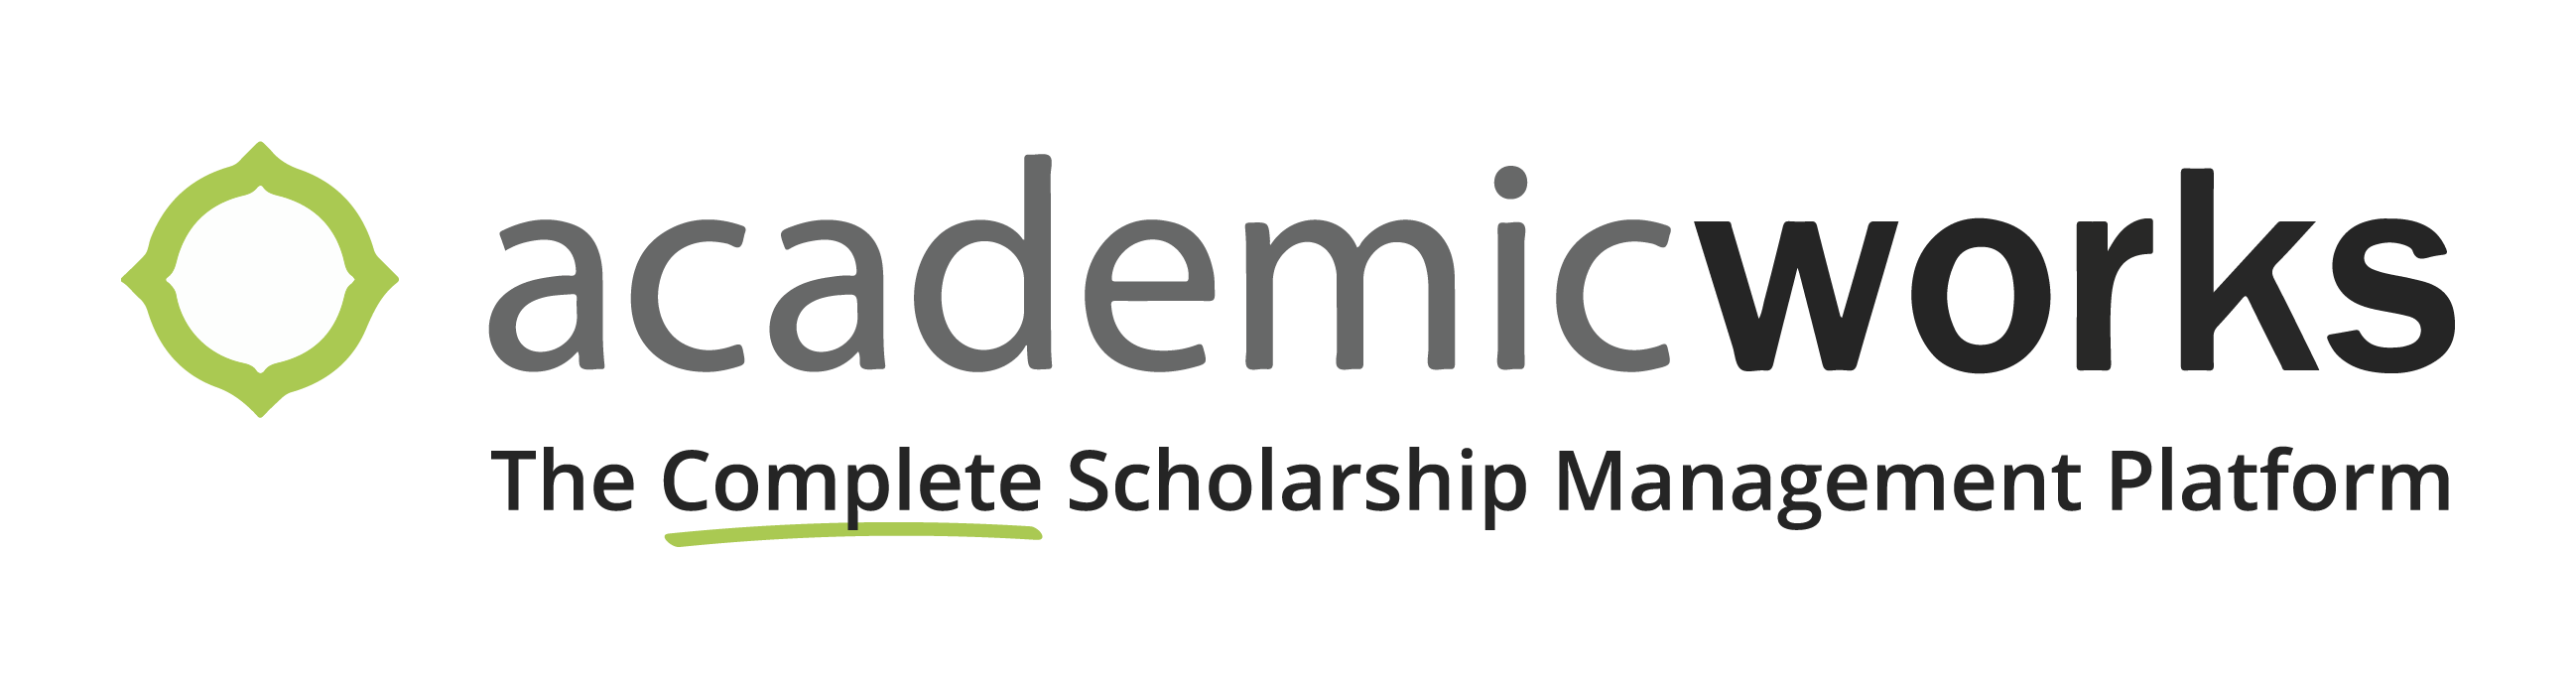 academicworks logo